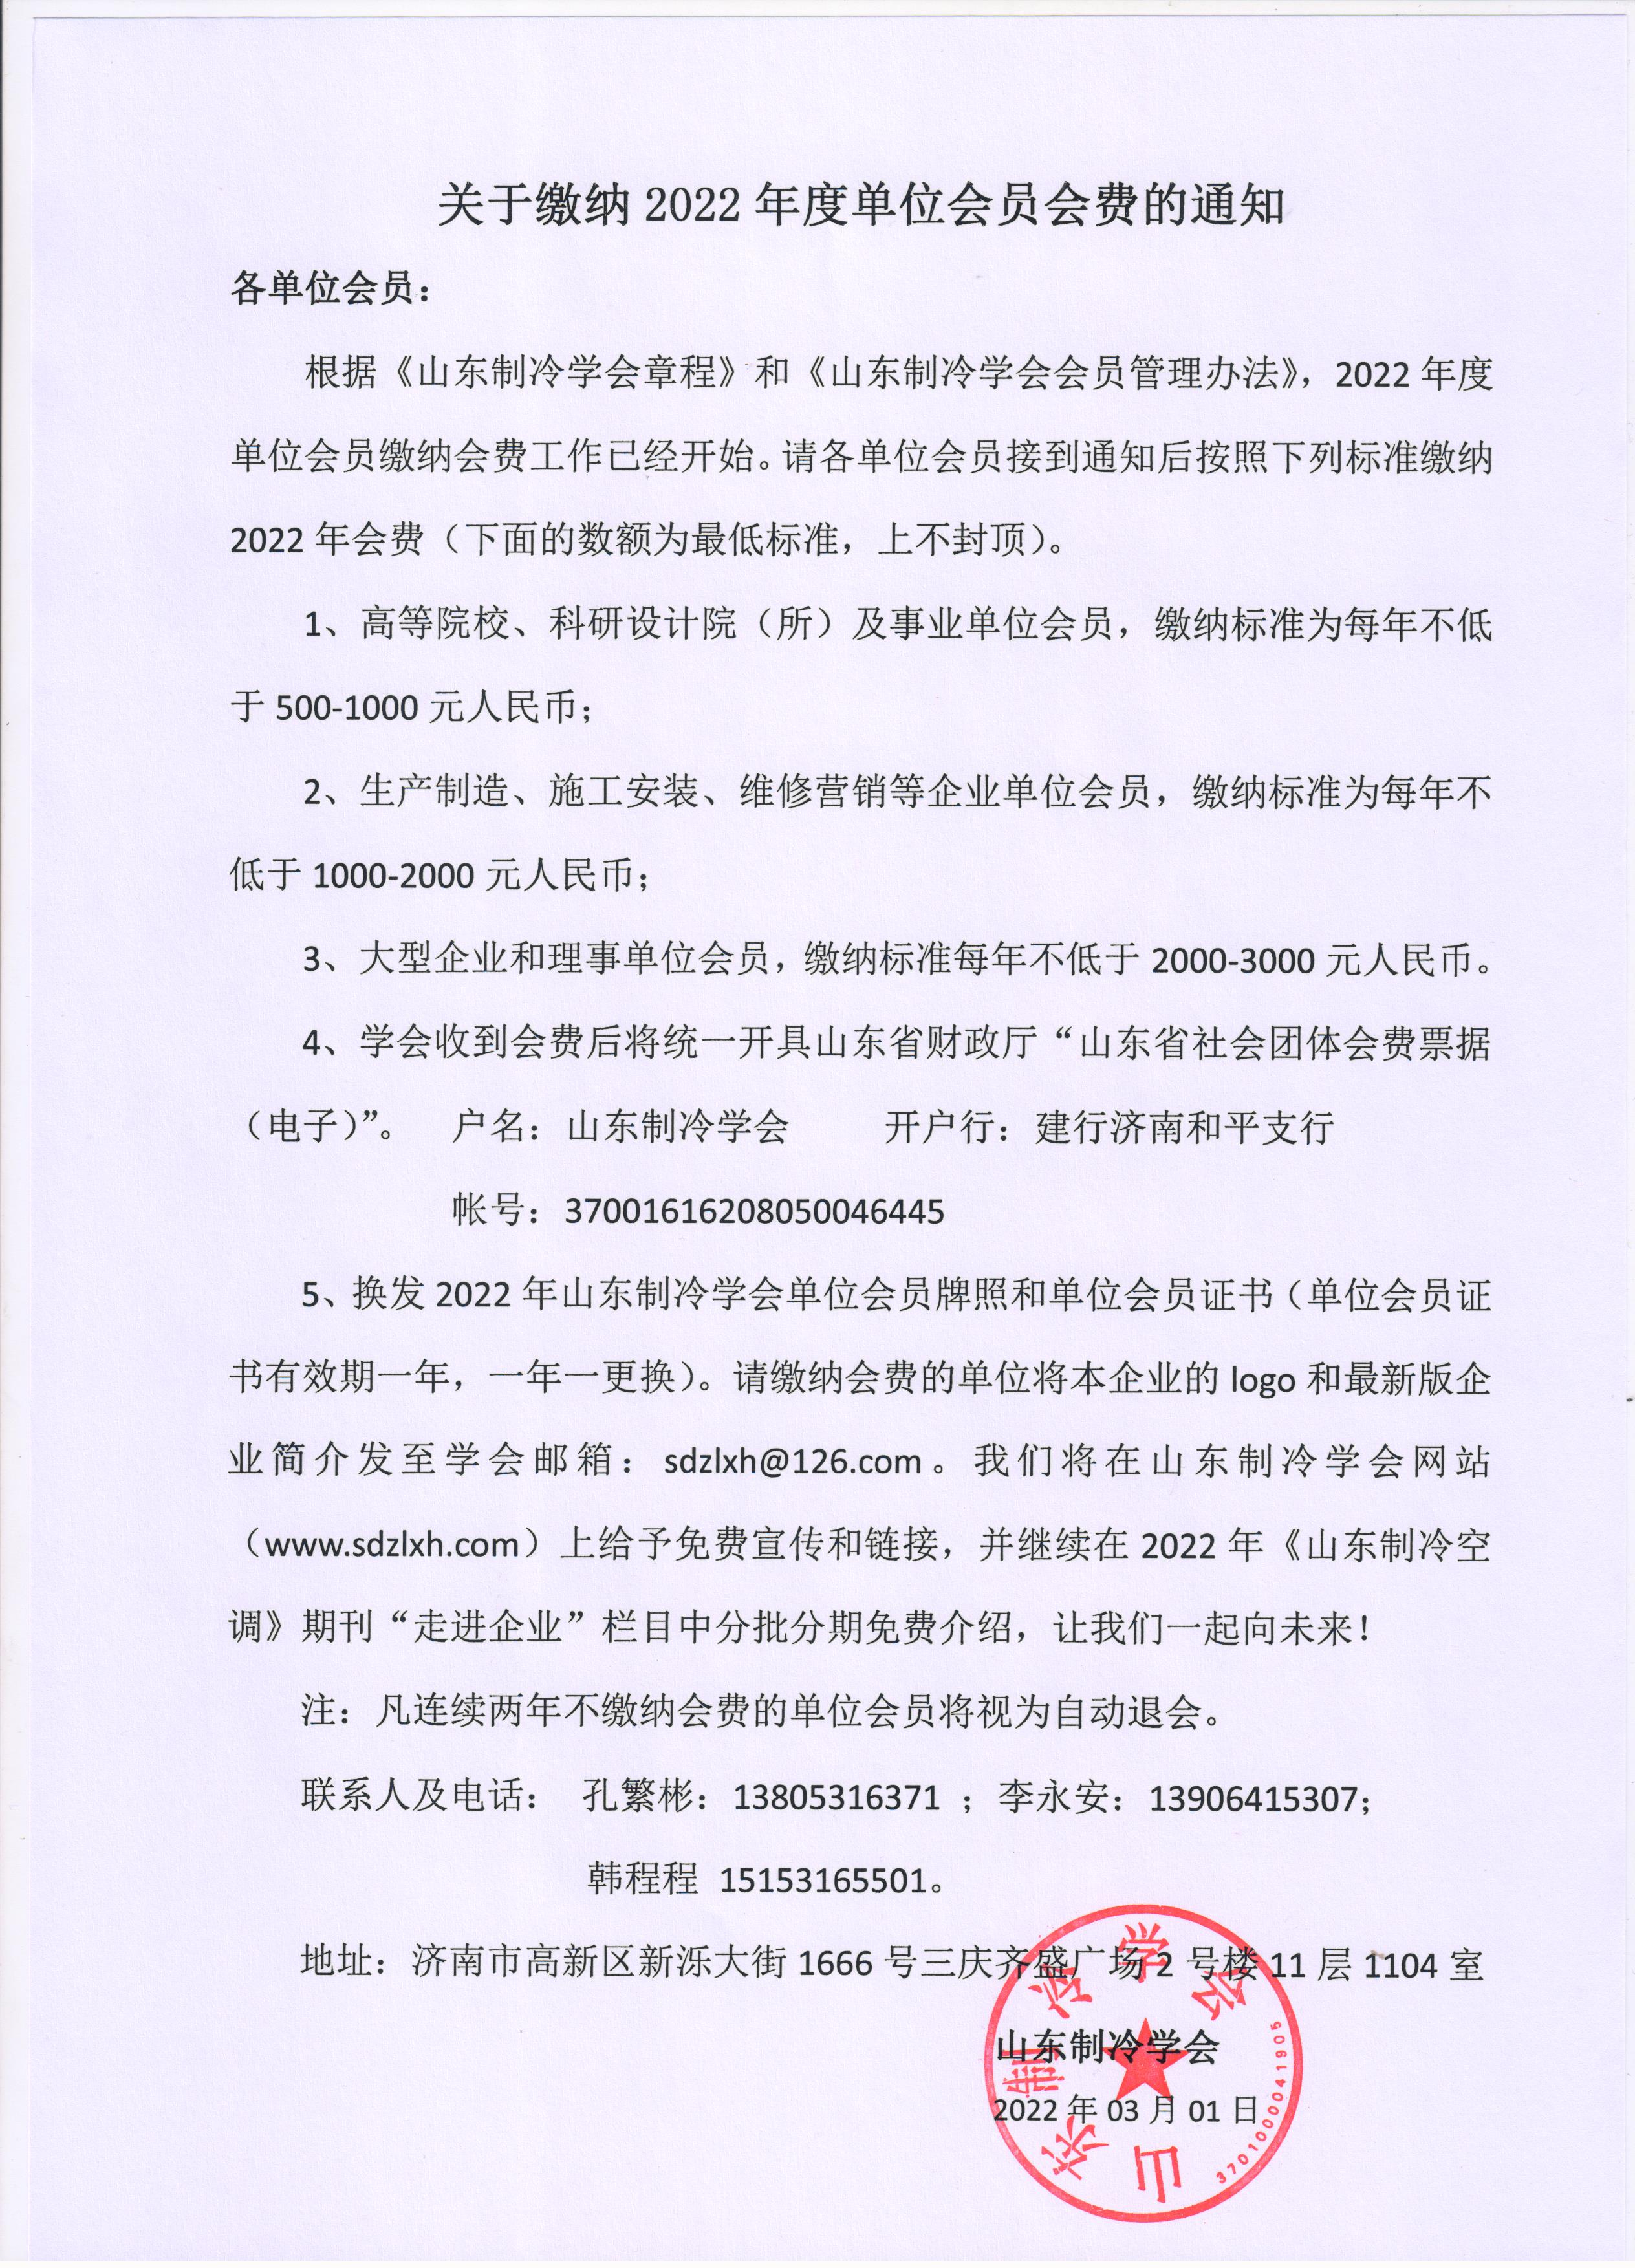 云开体育(China)官方网站缴纳2022年度单位会员会费的通知